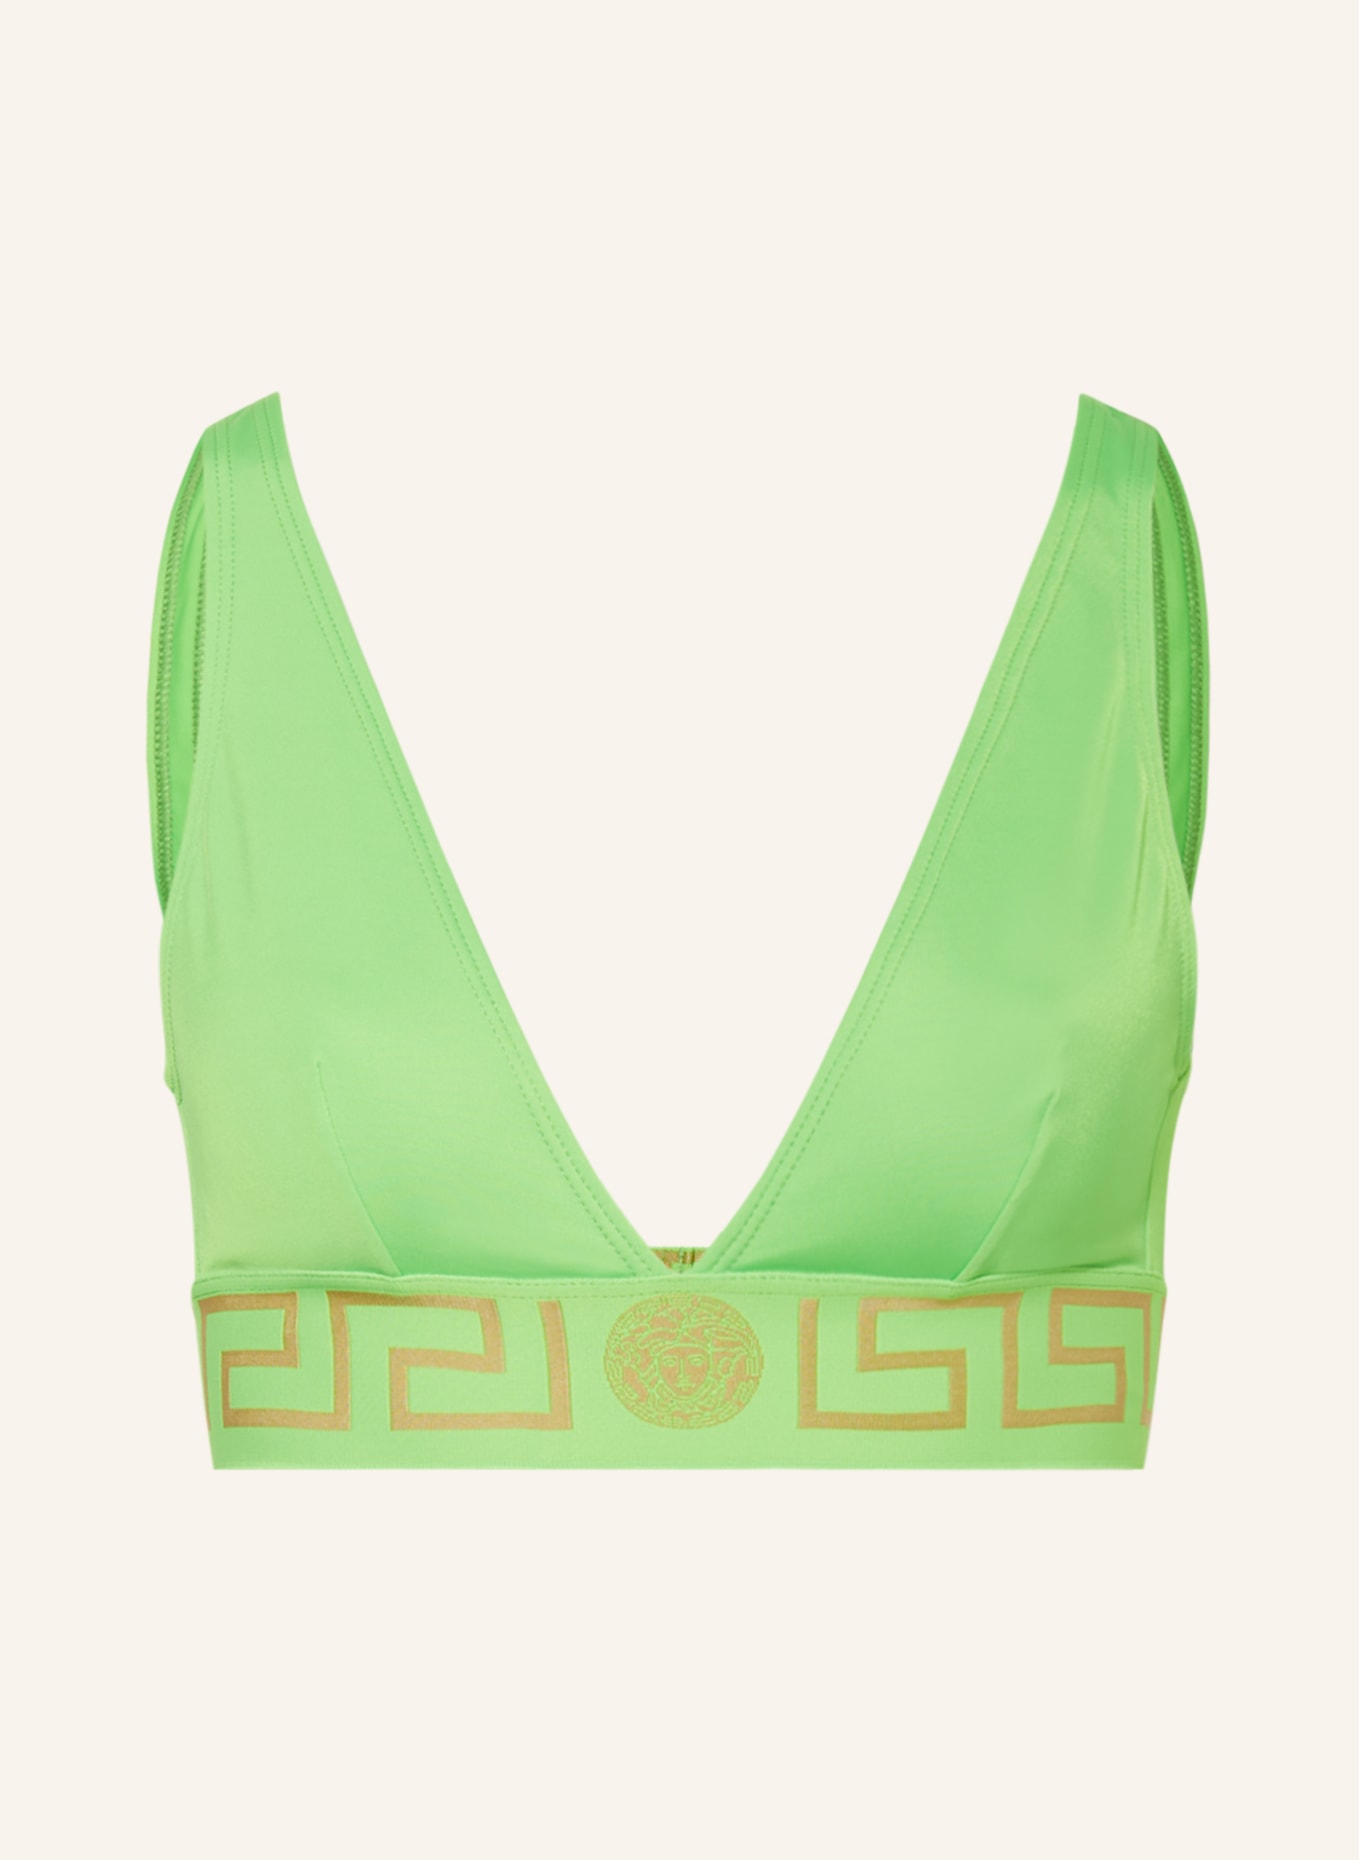 VERSACE Bralette-Bikini-Top, Farbe: NEONGRÜN (Bild 1)